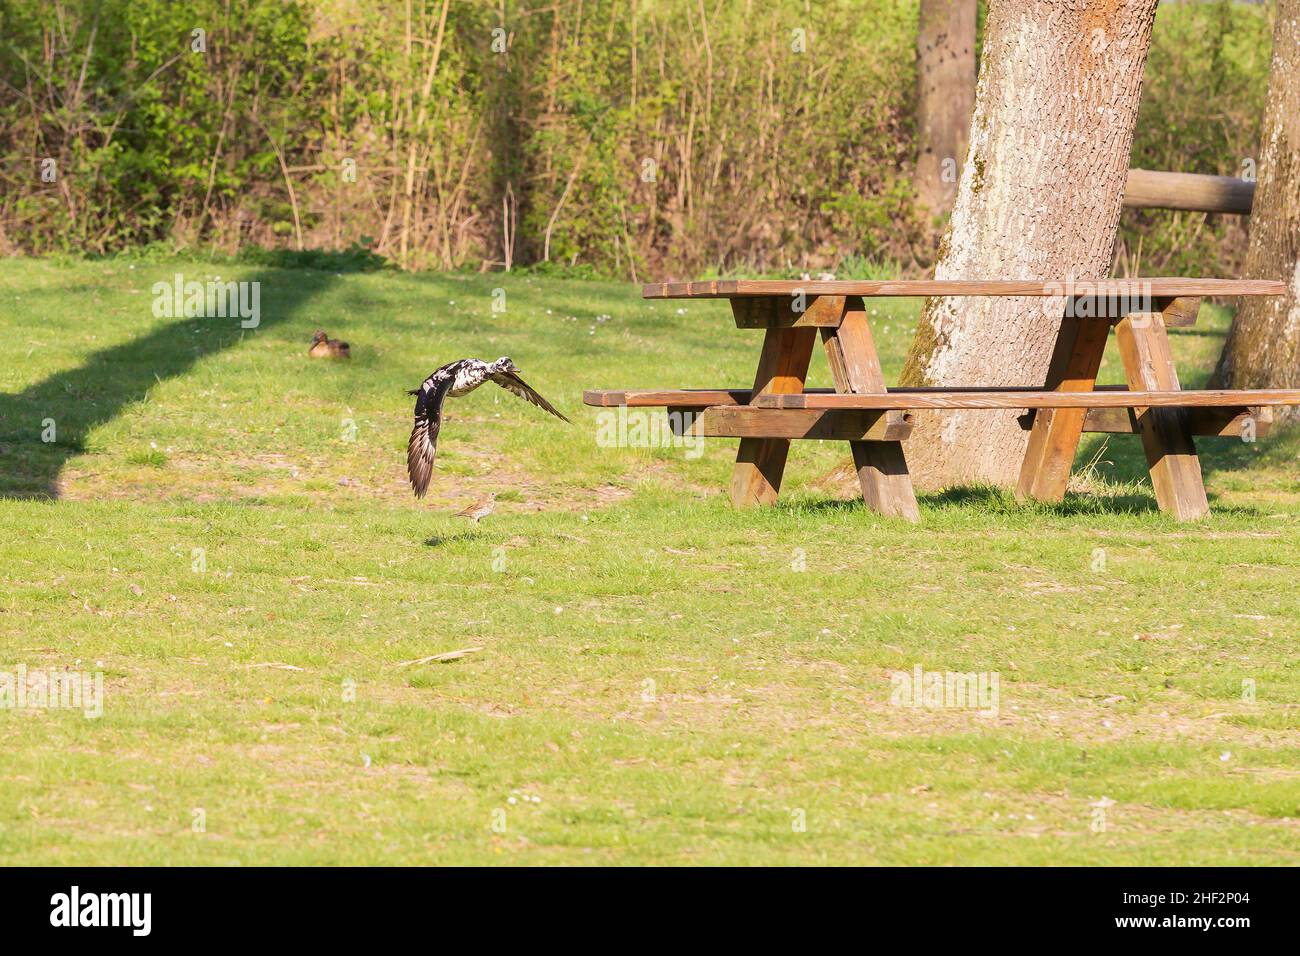 Un pato salvaje vuela sobre un prado en buen tiempo. Foto de stock